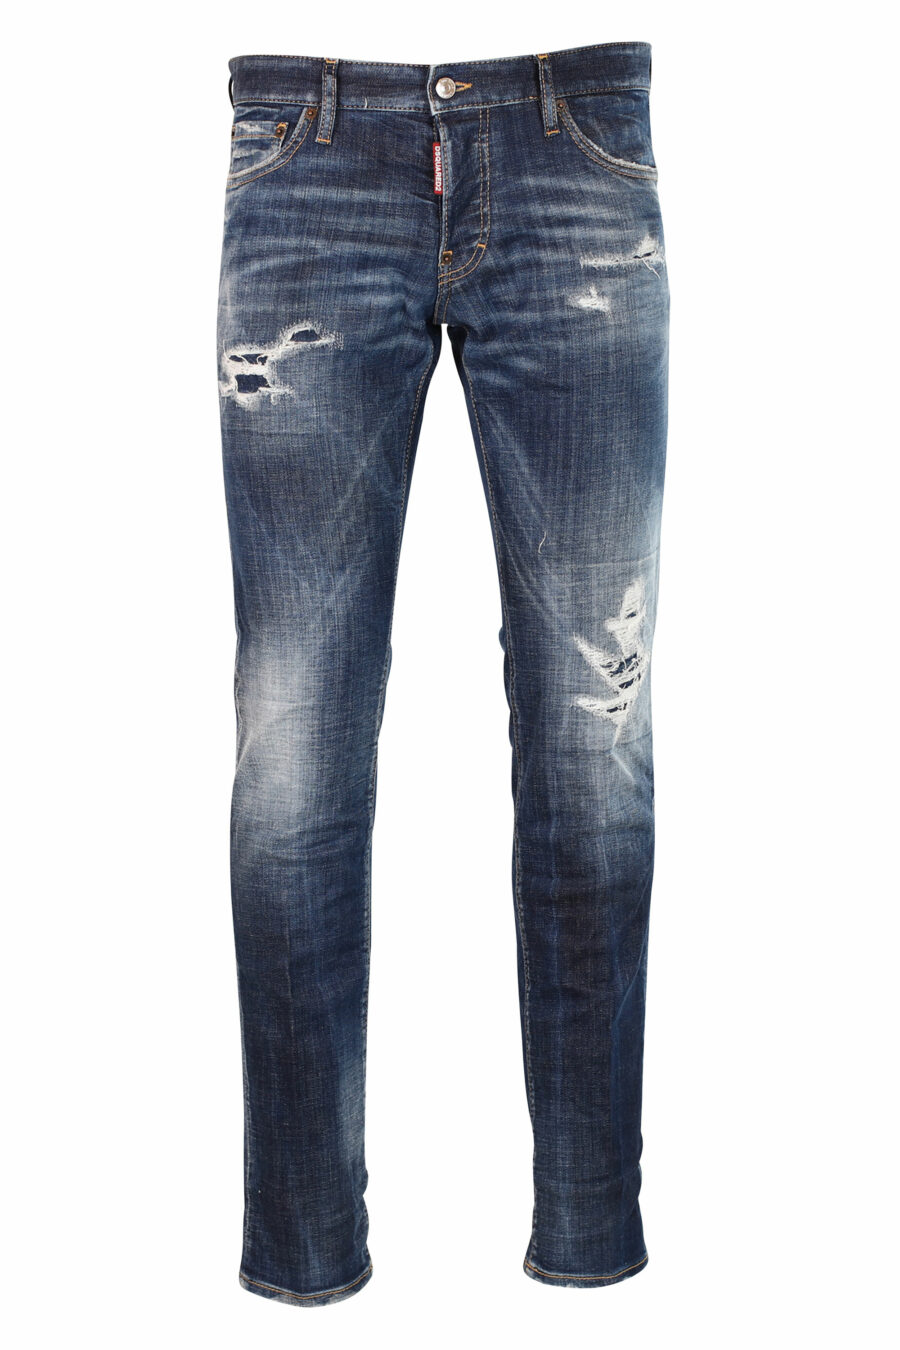 Schmale Jeans "Slim jean" blau semi-getragen mit Rissen - Fotos 8052134942789